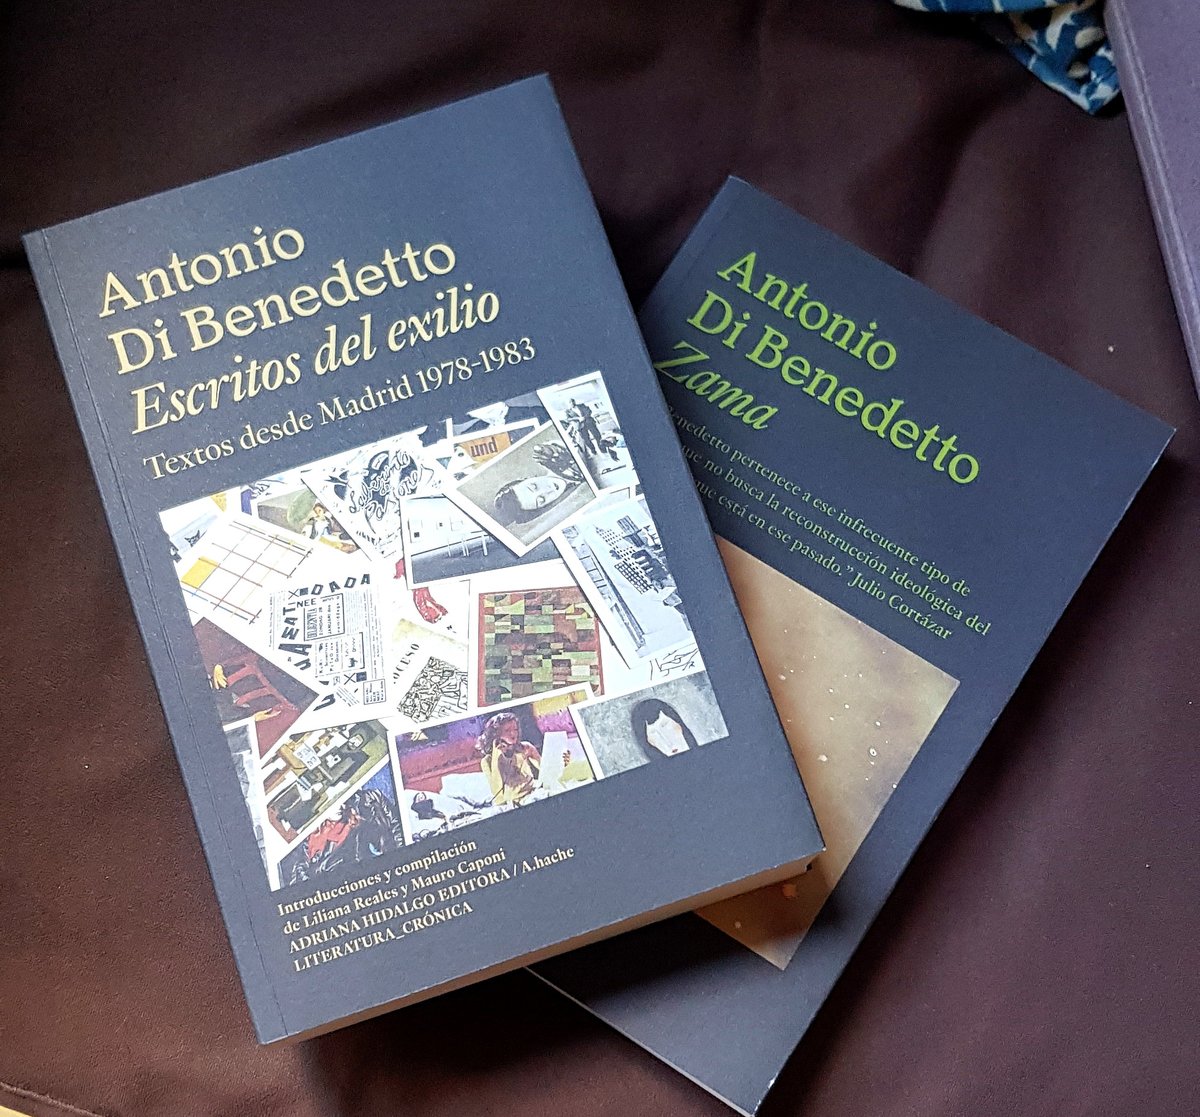 Dos obras de Antonio Di Benedetto (una de ellas, la 'Zama' que filmó Lucrecia Martel), en @AdrianaHidalgoE